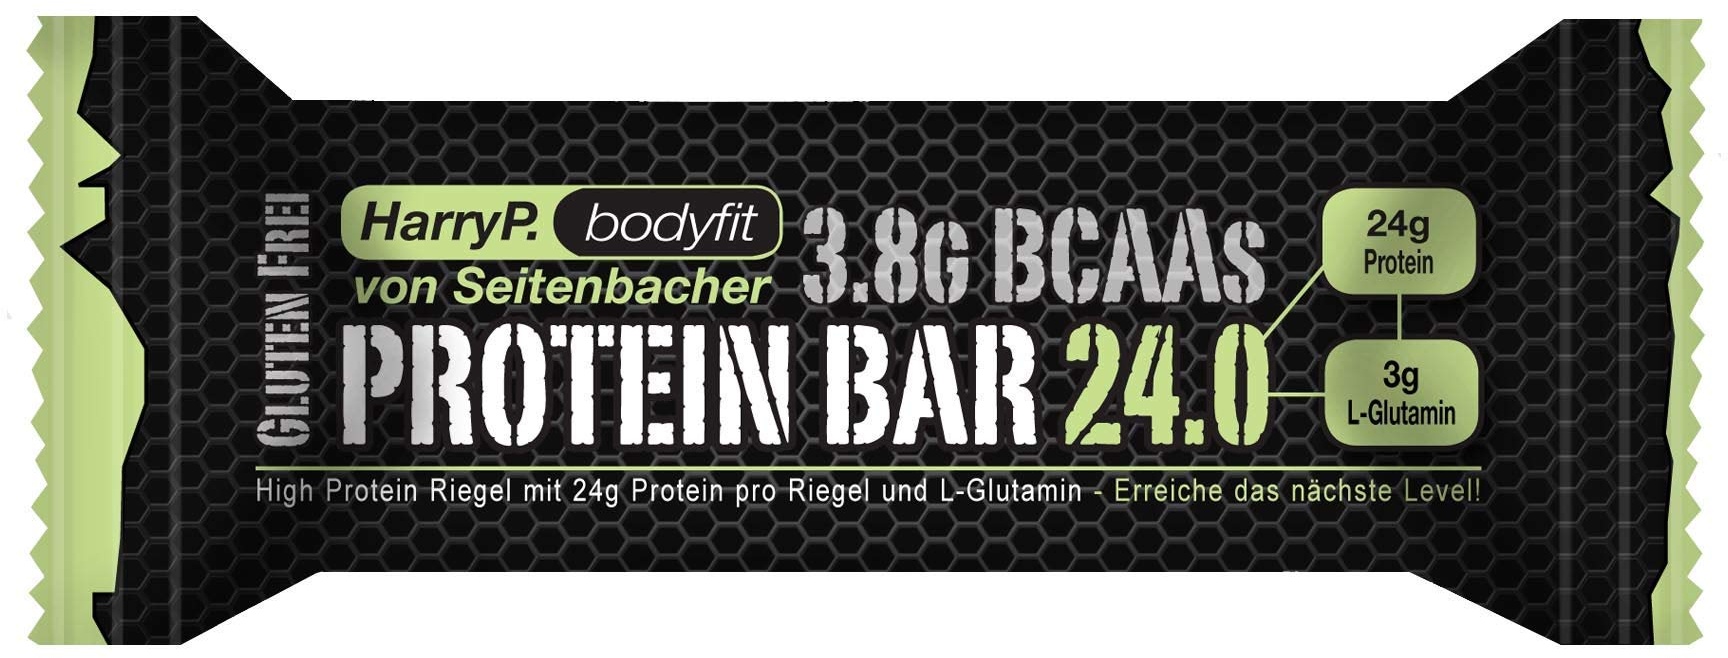 protein bar 70